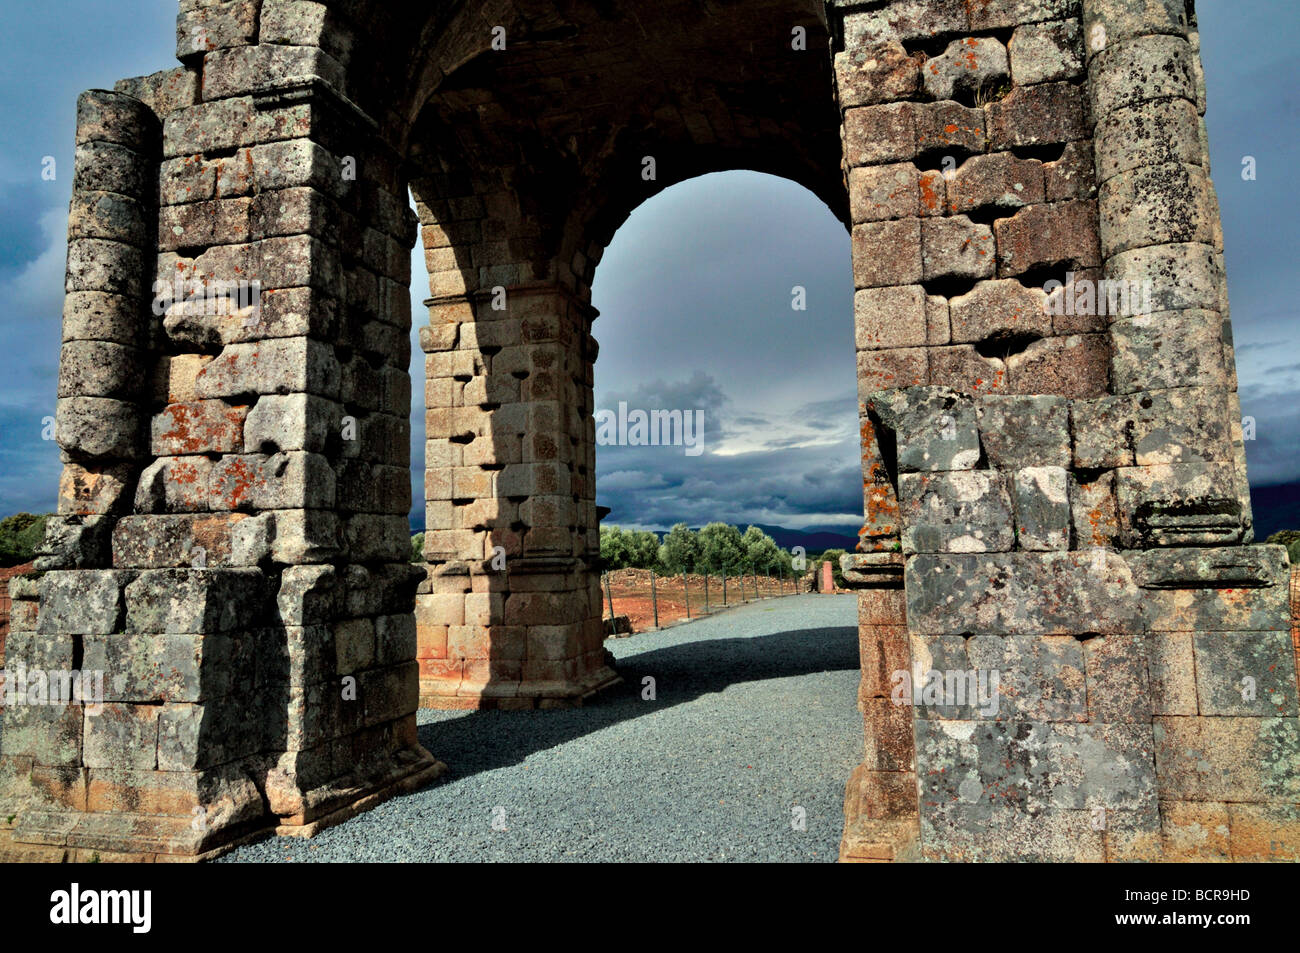 Spain, Via de la Plata: Roman arch Arco de Cáparra in the spanish province of Cáceres Stock Photo